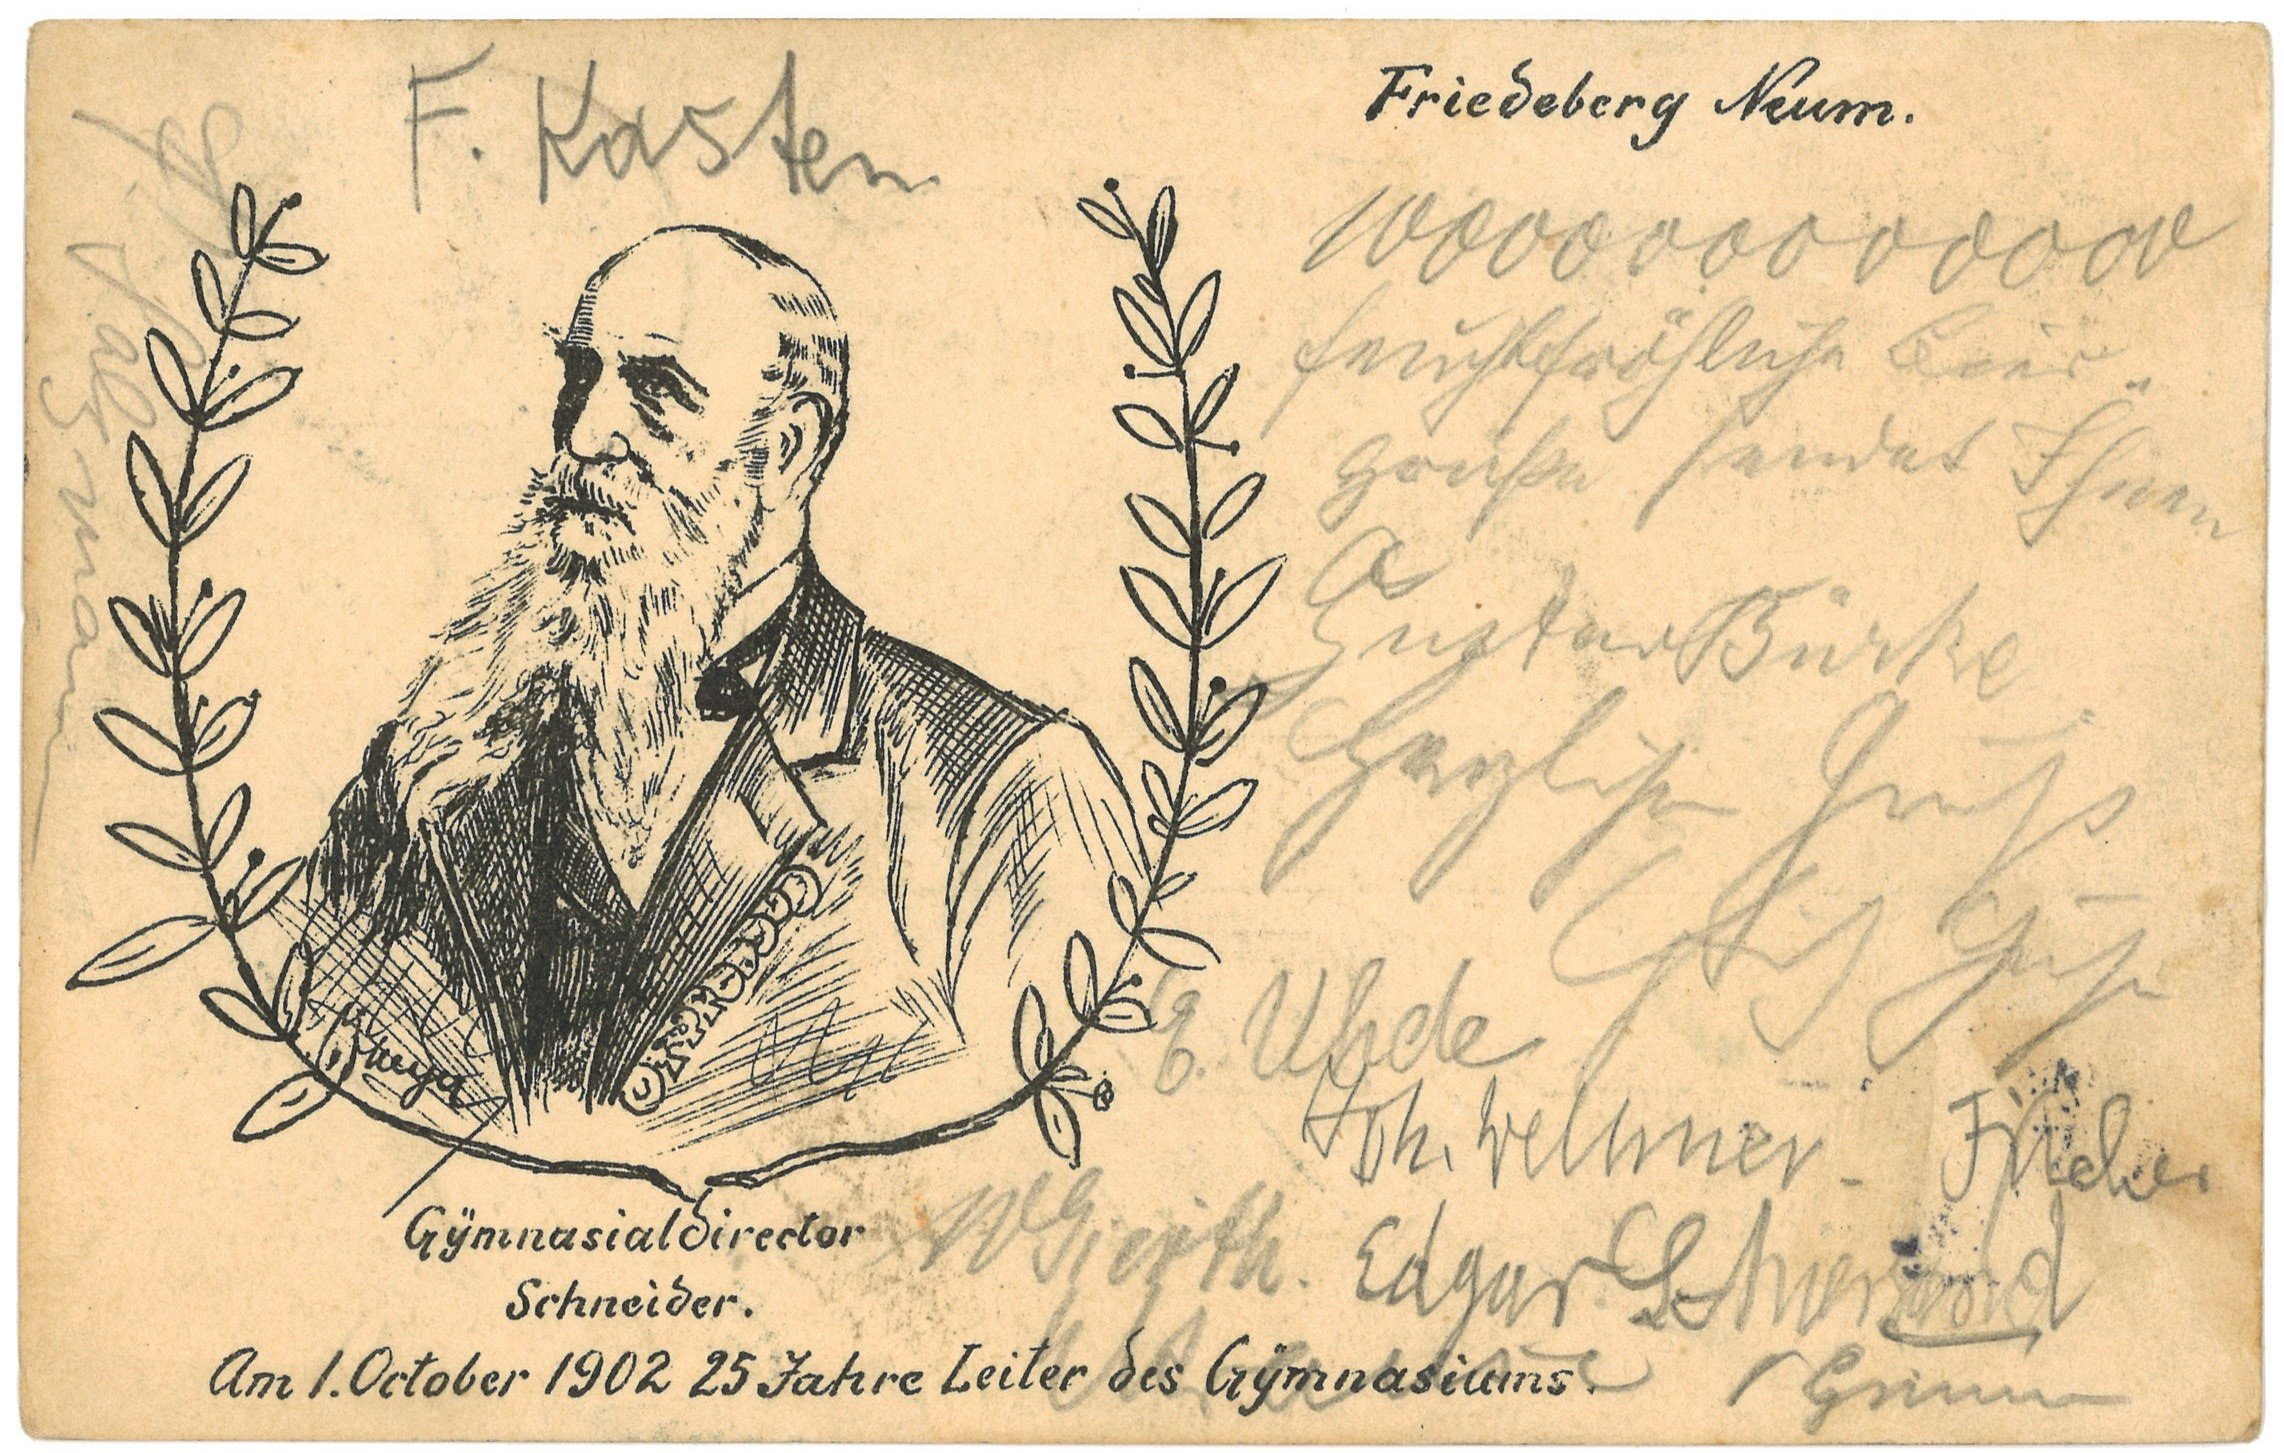 25-jähriges Amtsjubiläum des Gymnasialdirektors Schneider in Friedeberg/Neumark 1902 (Landesgeschichtliche Vereinigung für die Mark Brandenburg e.V. CC BY)